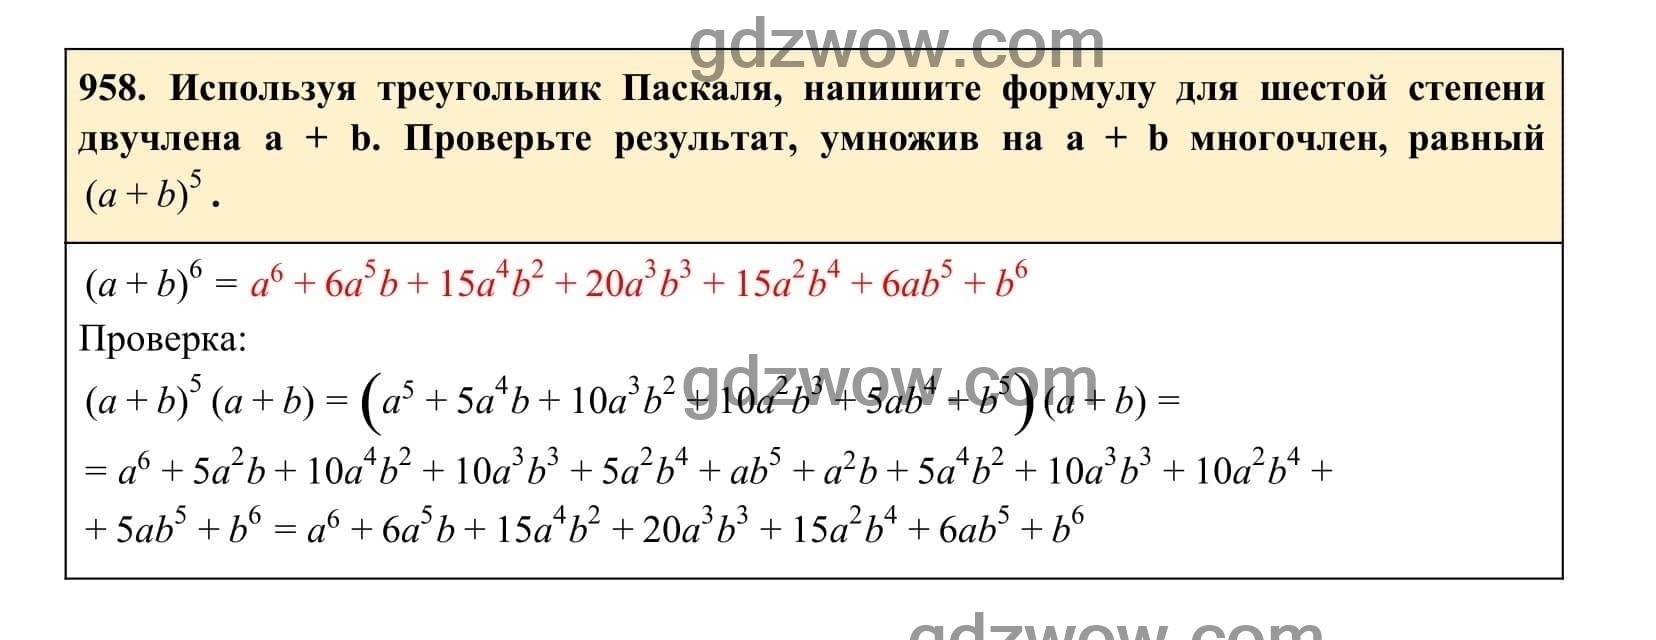 Упражнение 958 - ГДЗ по Алгебре 7 класс Учебник Макарычев (решебник) - GDZwow